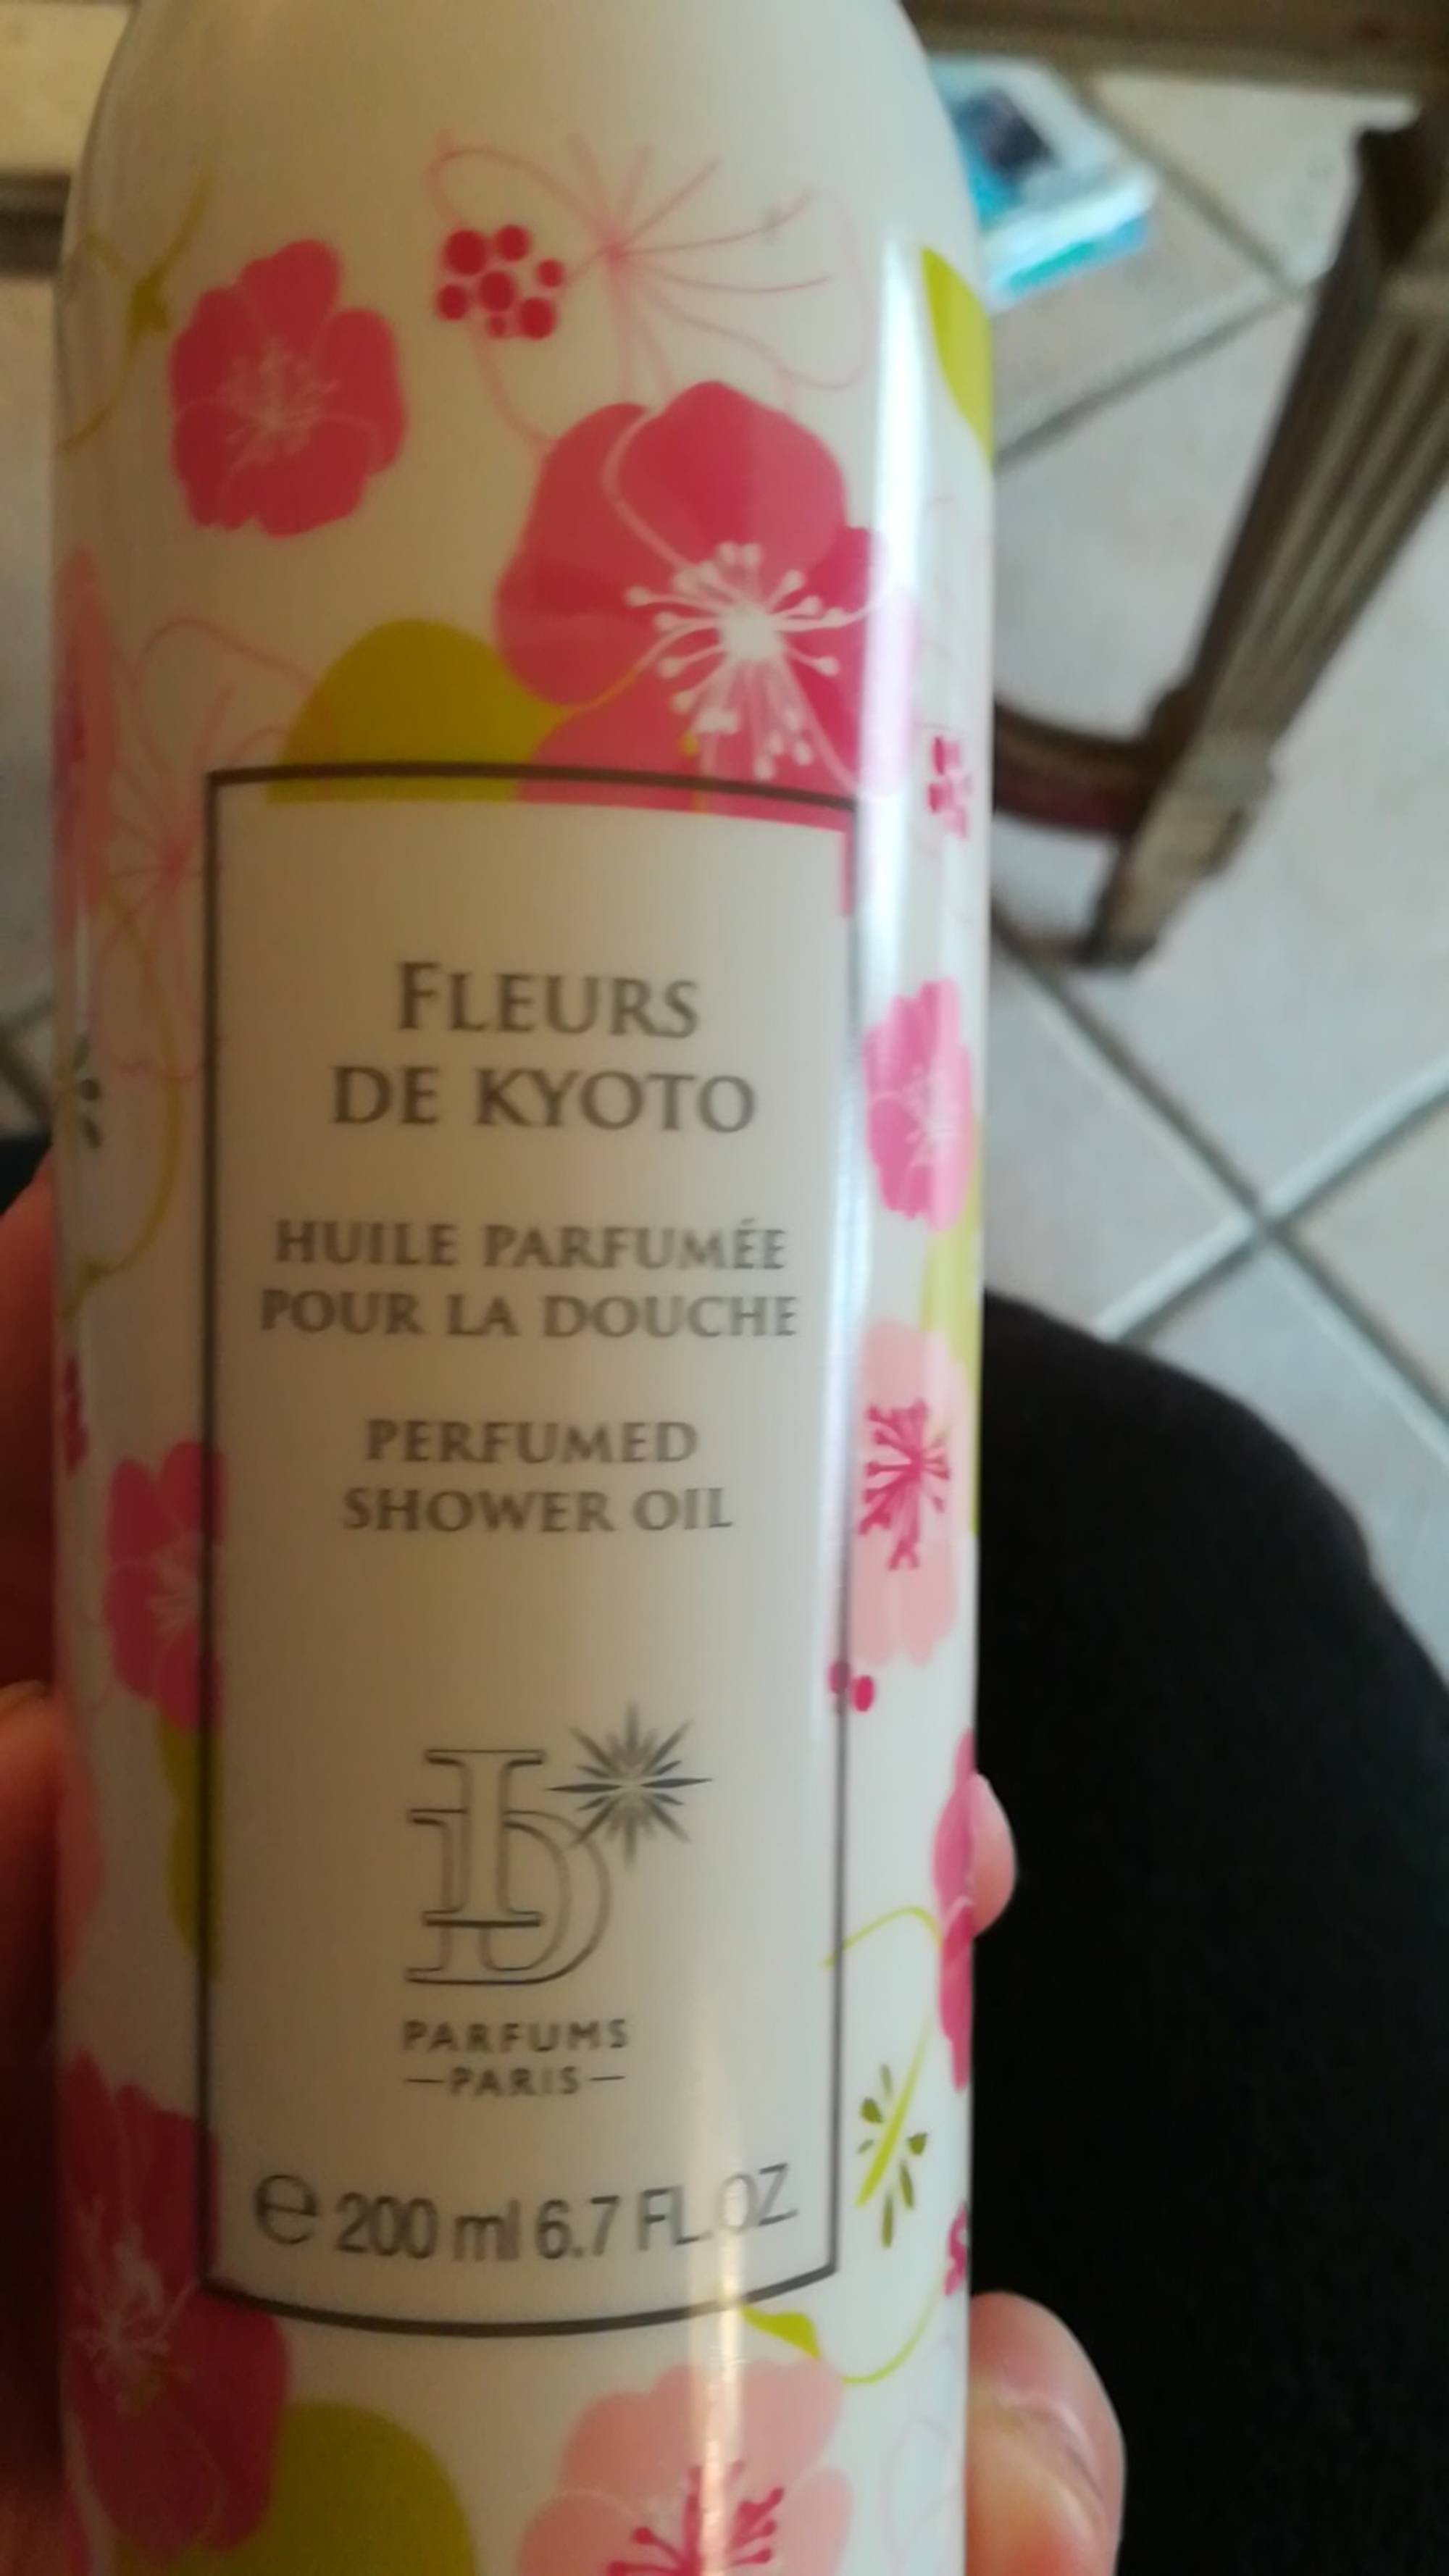 ID PARFUMS - Fleurs de Kyoto - Huile parfumée pour la douche